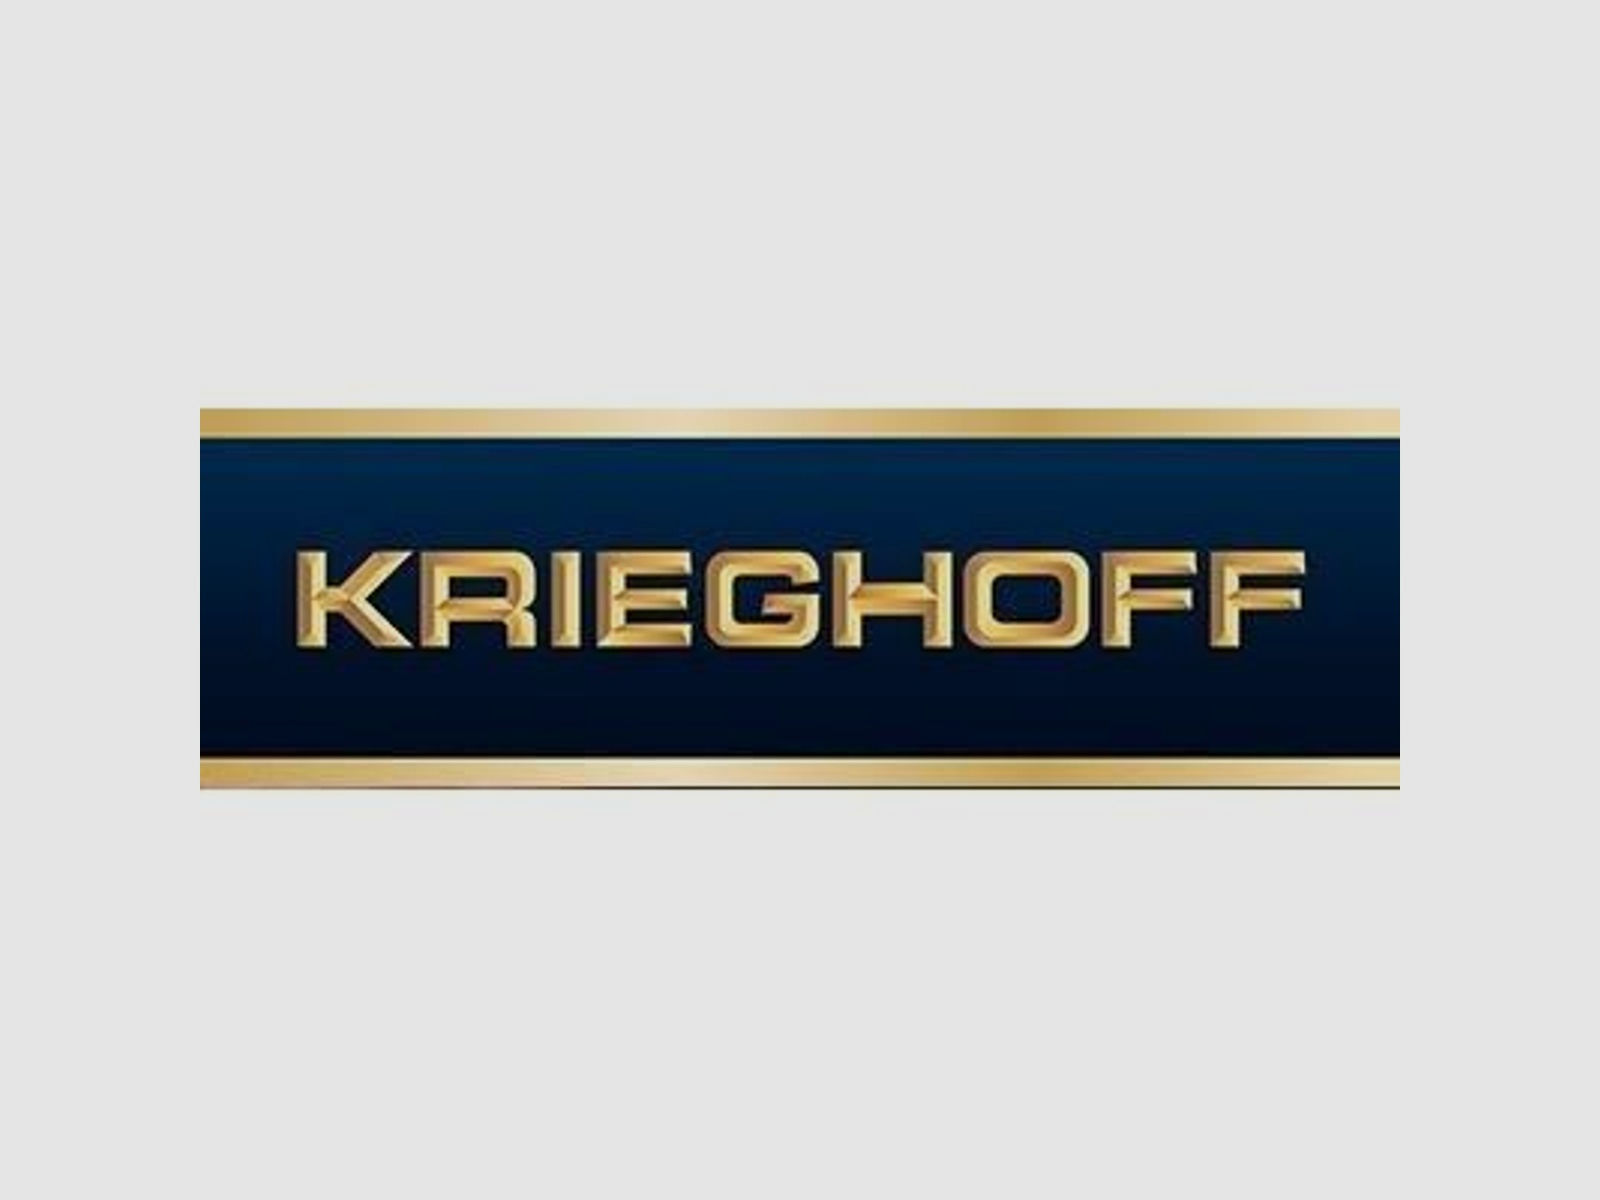 KRIEGHOFF Mehrpreis für Neuwaffe Schaft: Handpoliertes Finish Optima-Ultra-Classic-Hubertus